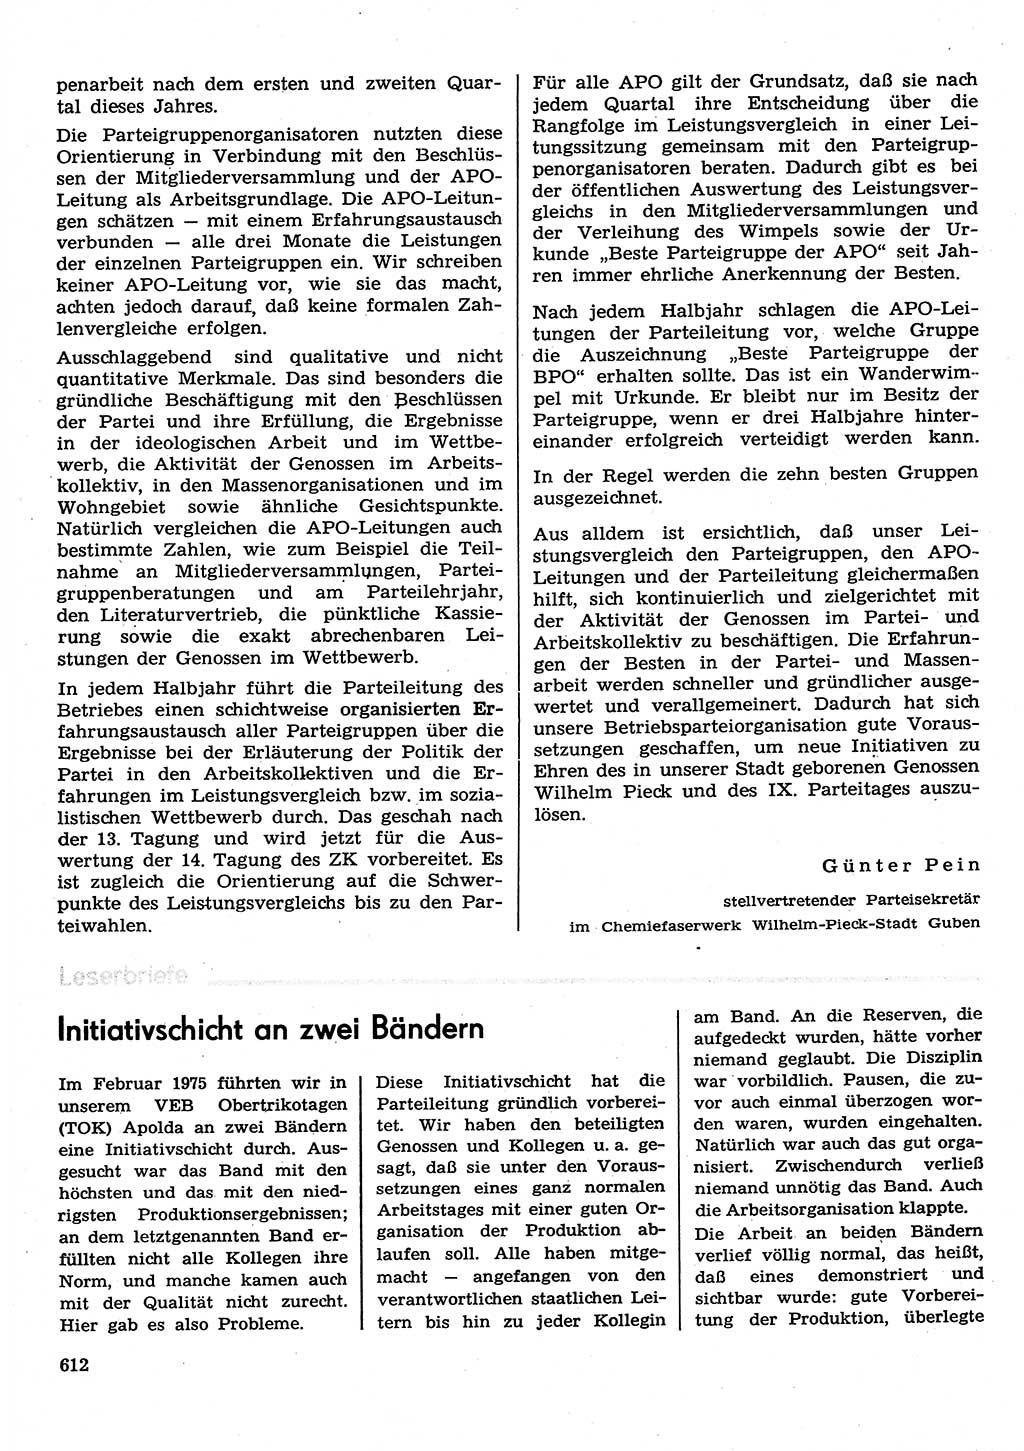 Neuer Weg (NW), Organ des Zentralkomitees (ZK) der SED (Sozialistische Einheitspartei Deutschlands) für Fragen des Parteilebens, 30. Jahrgang [Deutsche Demokratische Republik (DDR)] 1975, Seite 612 (NW ZK SED DDR 1975, S. 612)